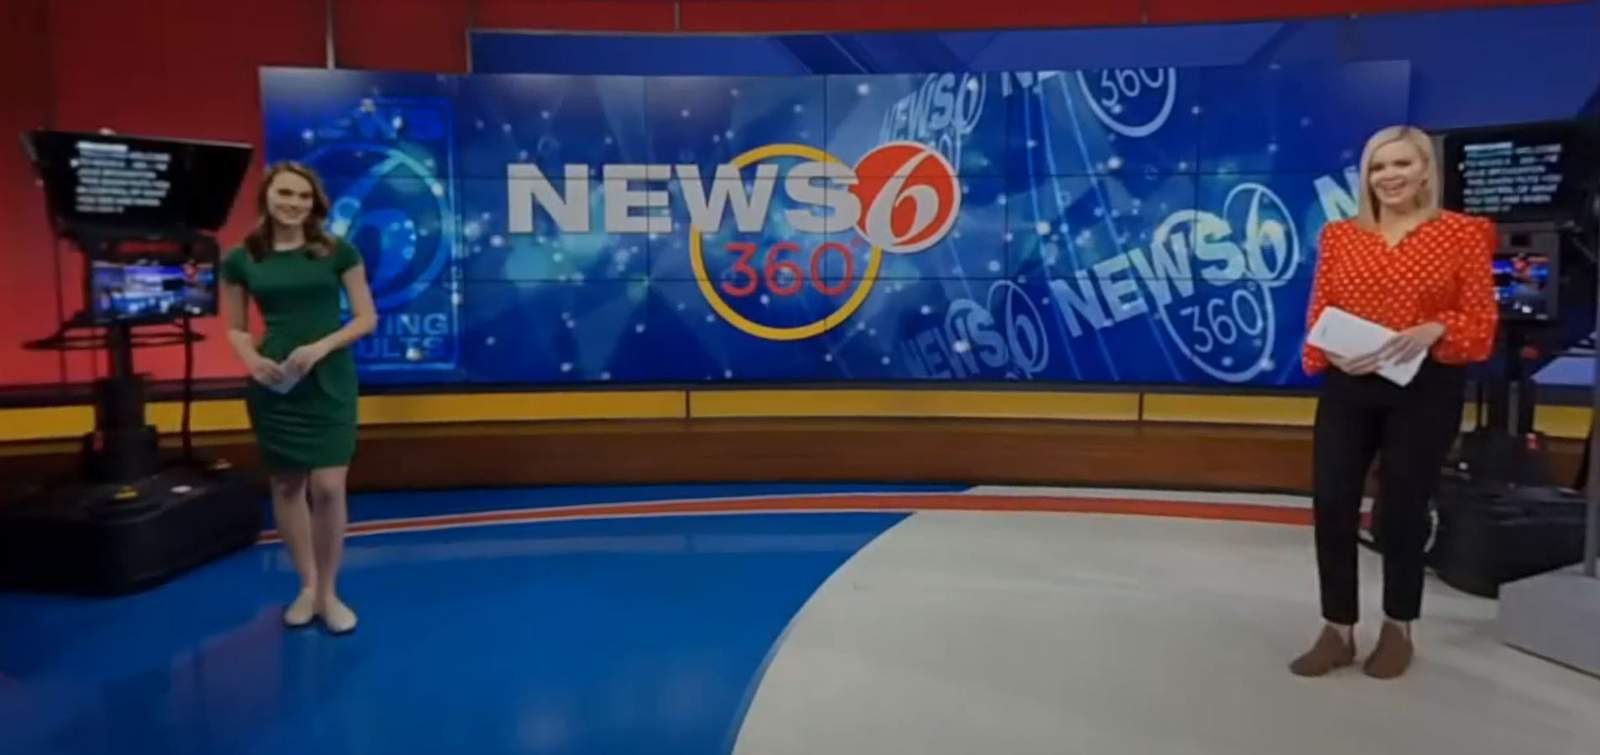 News 6/360: Earthquake felt in South Florida; #GirlDad goes viral in honor of Kobe Bryant